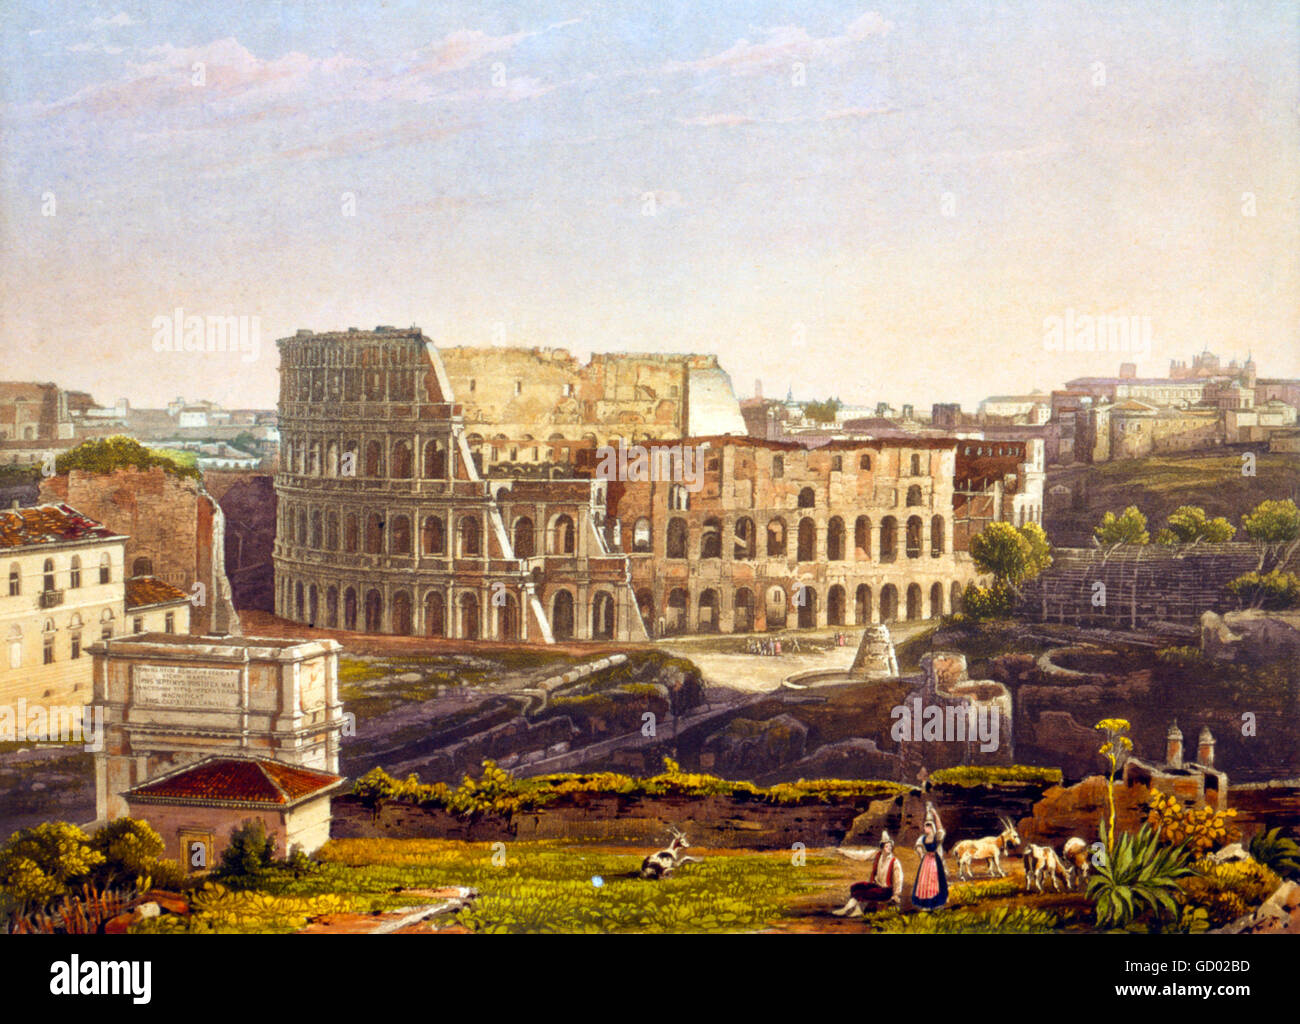 Kolosseum, Rom. 19. Jahrhundert-Blick auf das Kolosseum in Rom. Radierung mit Aquatinta von einem Daguerrotype von Noël Paymal Lerebours, 1842. Stockfoto